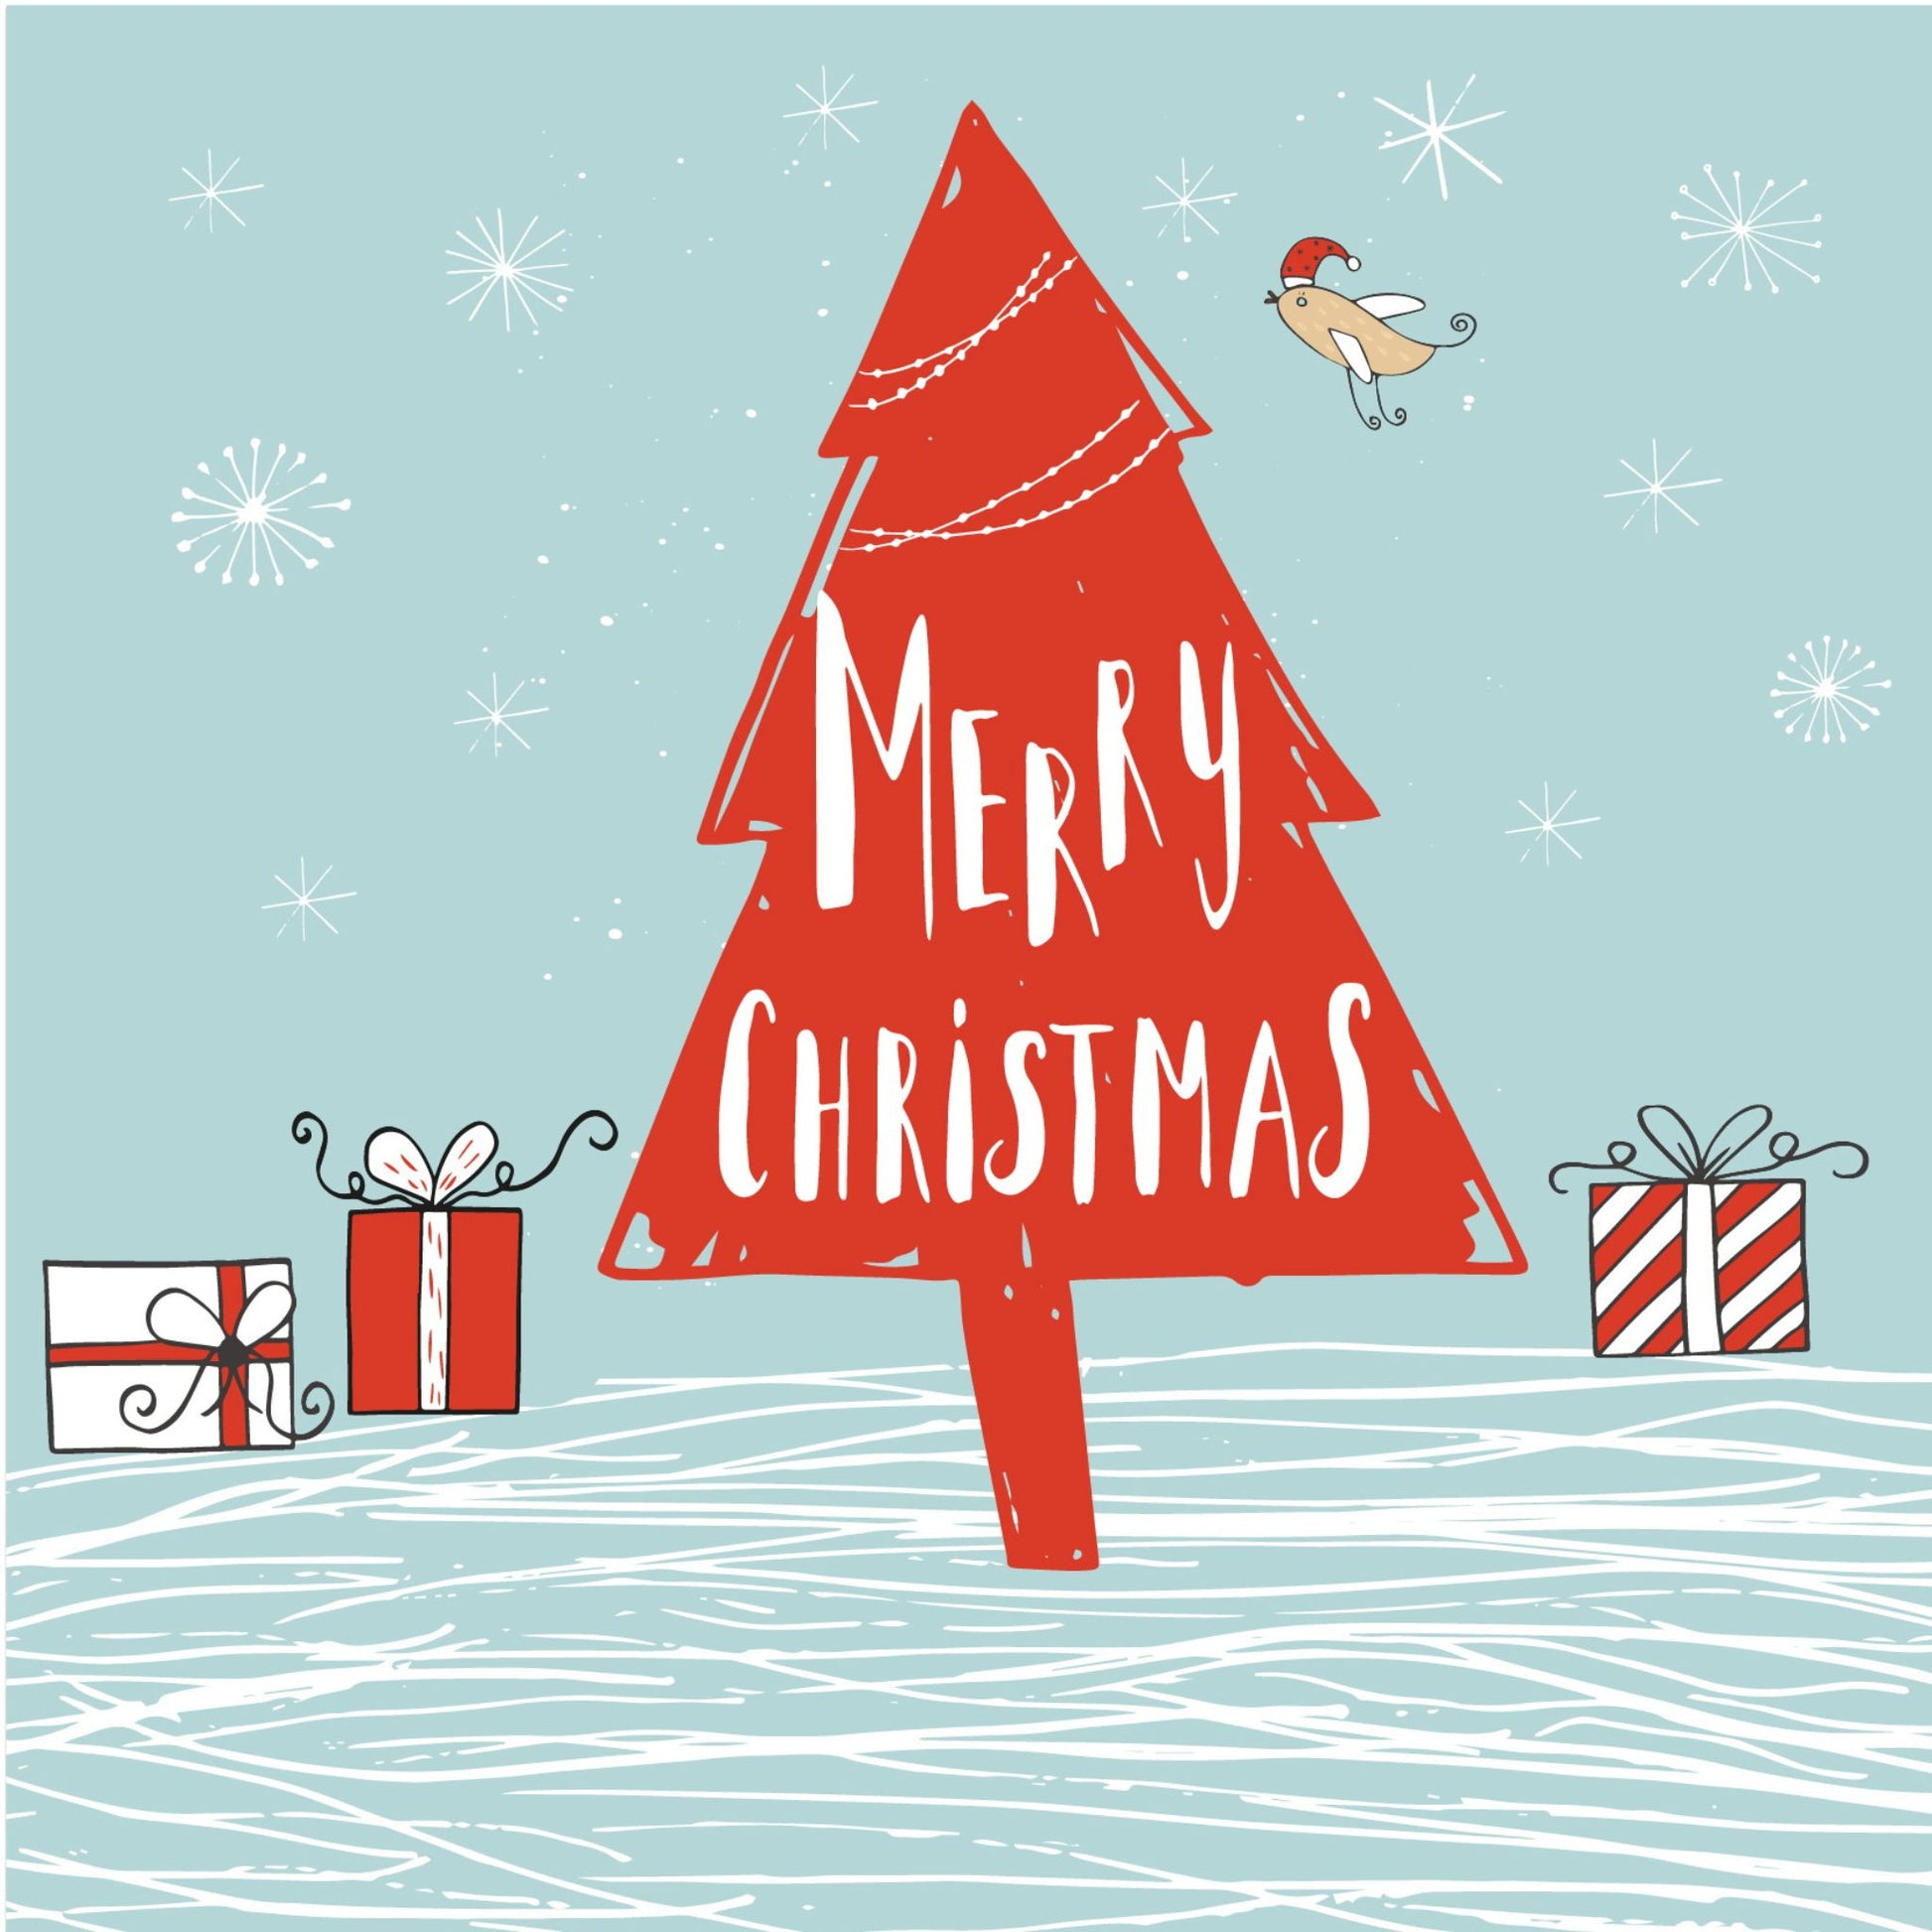 Håndtegnet cartoon julekort.  motiv Rødt juletre og julepakker. En fugl med rød isselue.Tekst "merry christmas"